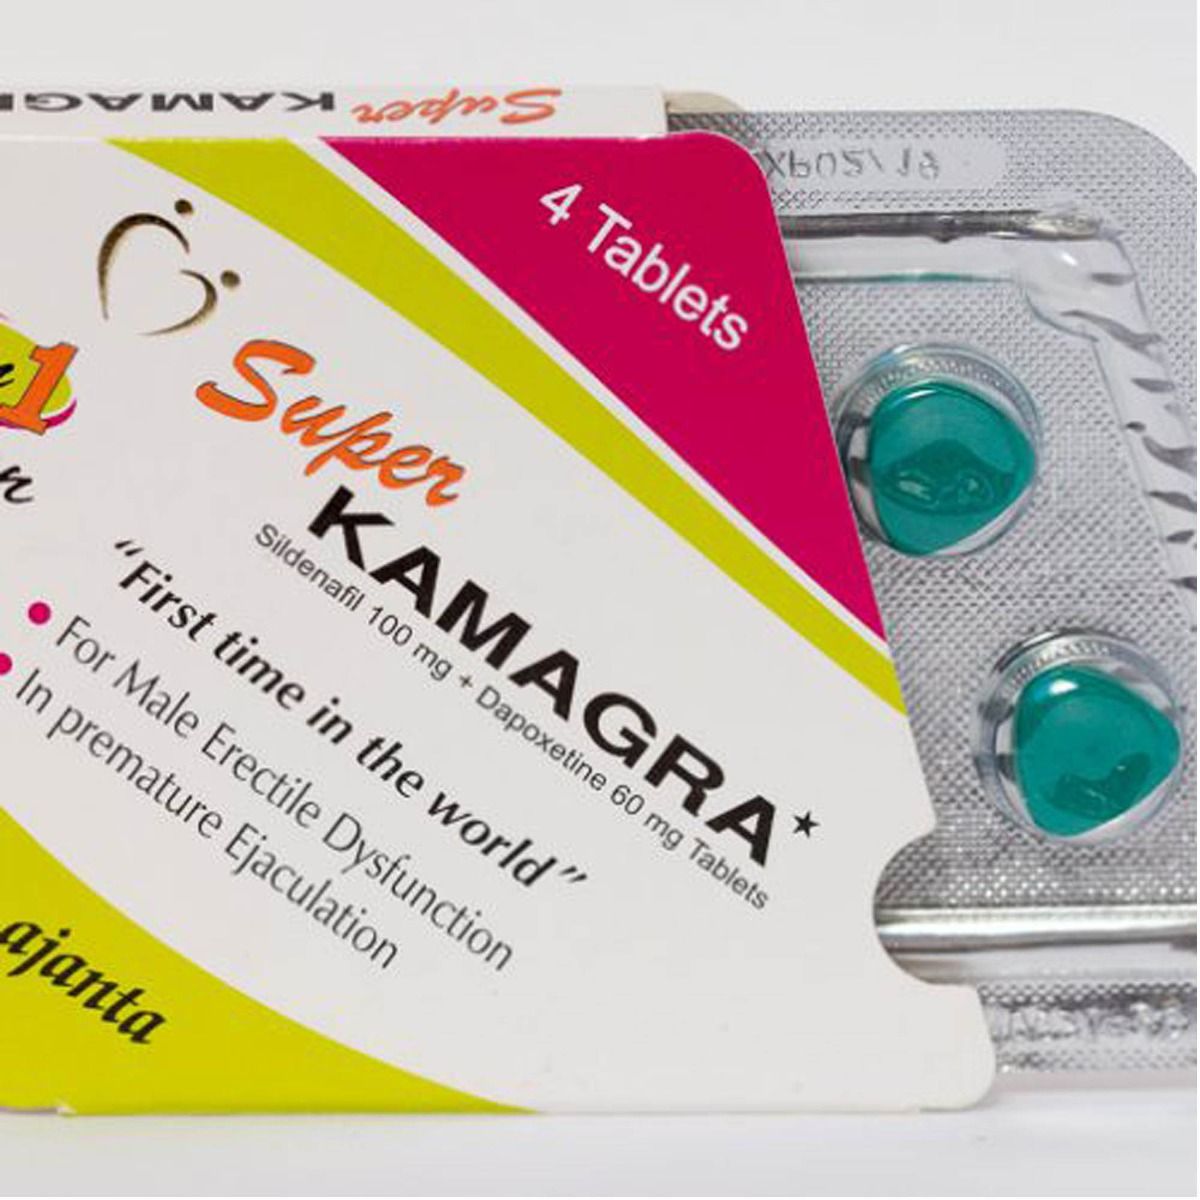 Does Viagra Make You Last Longer? - Superdrug Online Doctor - Truths